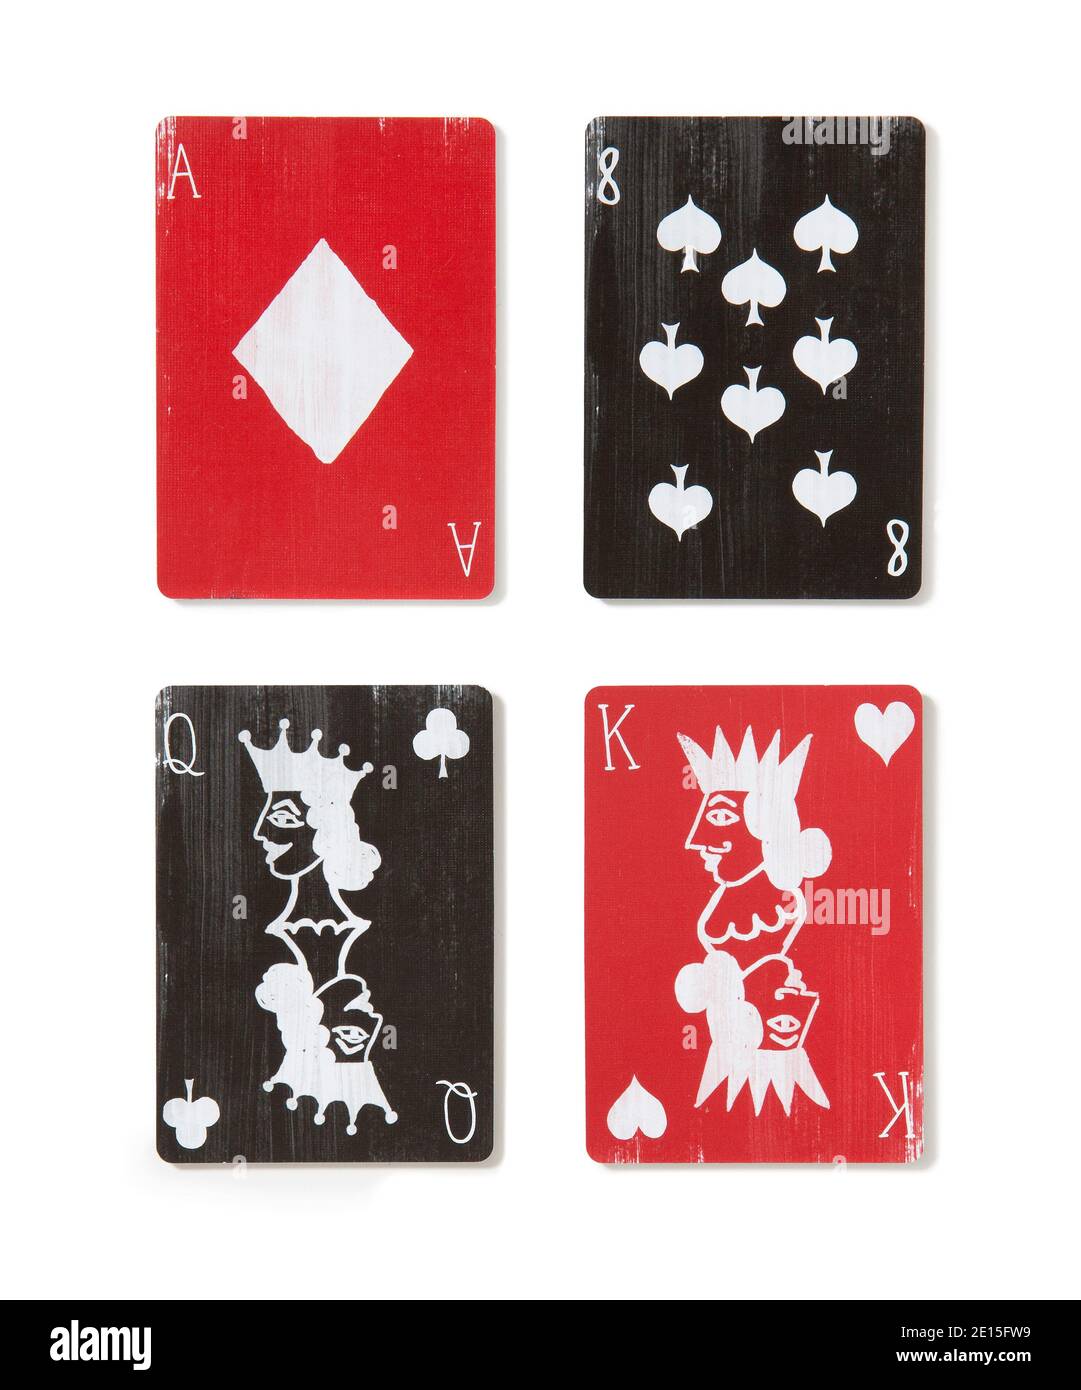 Cartes à jouer rouges et noires photographiées sur fond blanc Banque D'Images